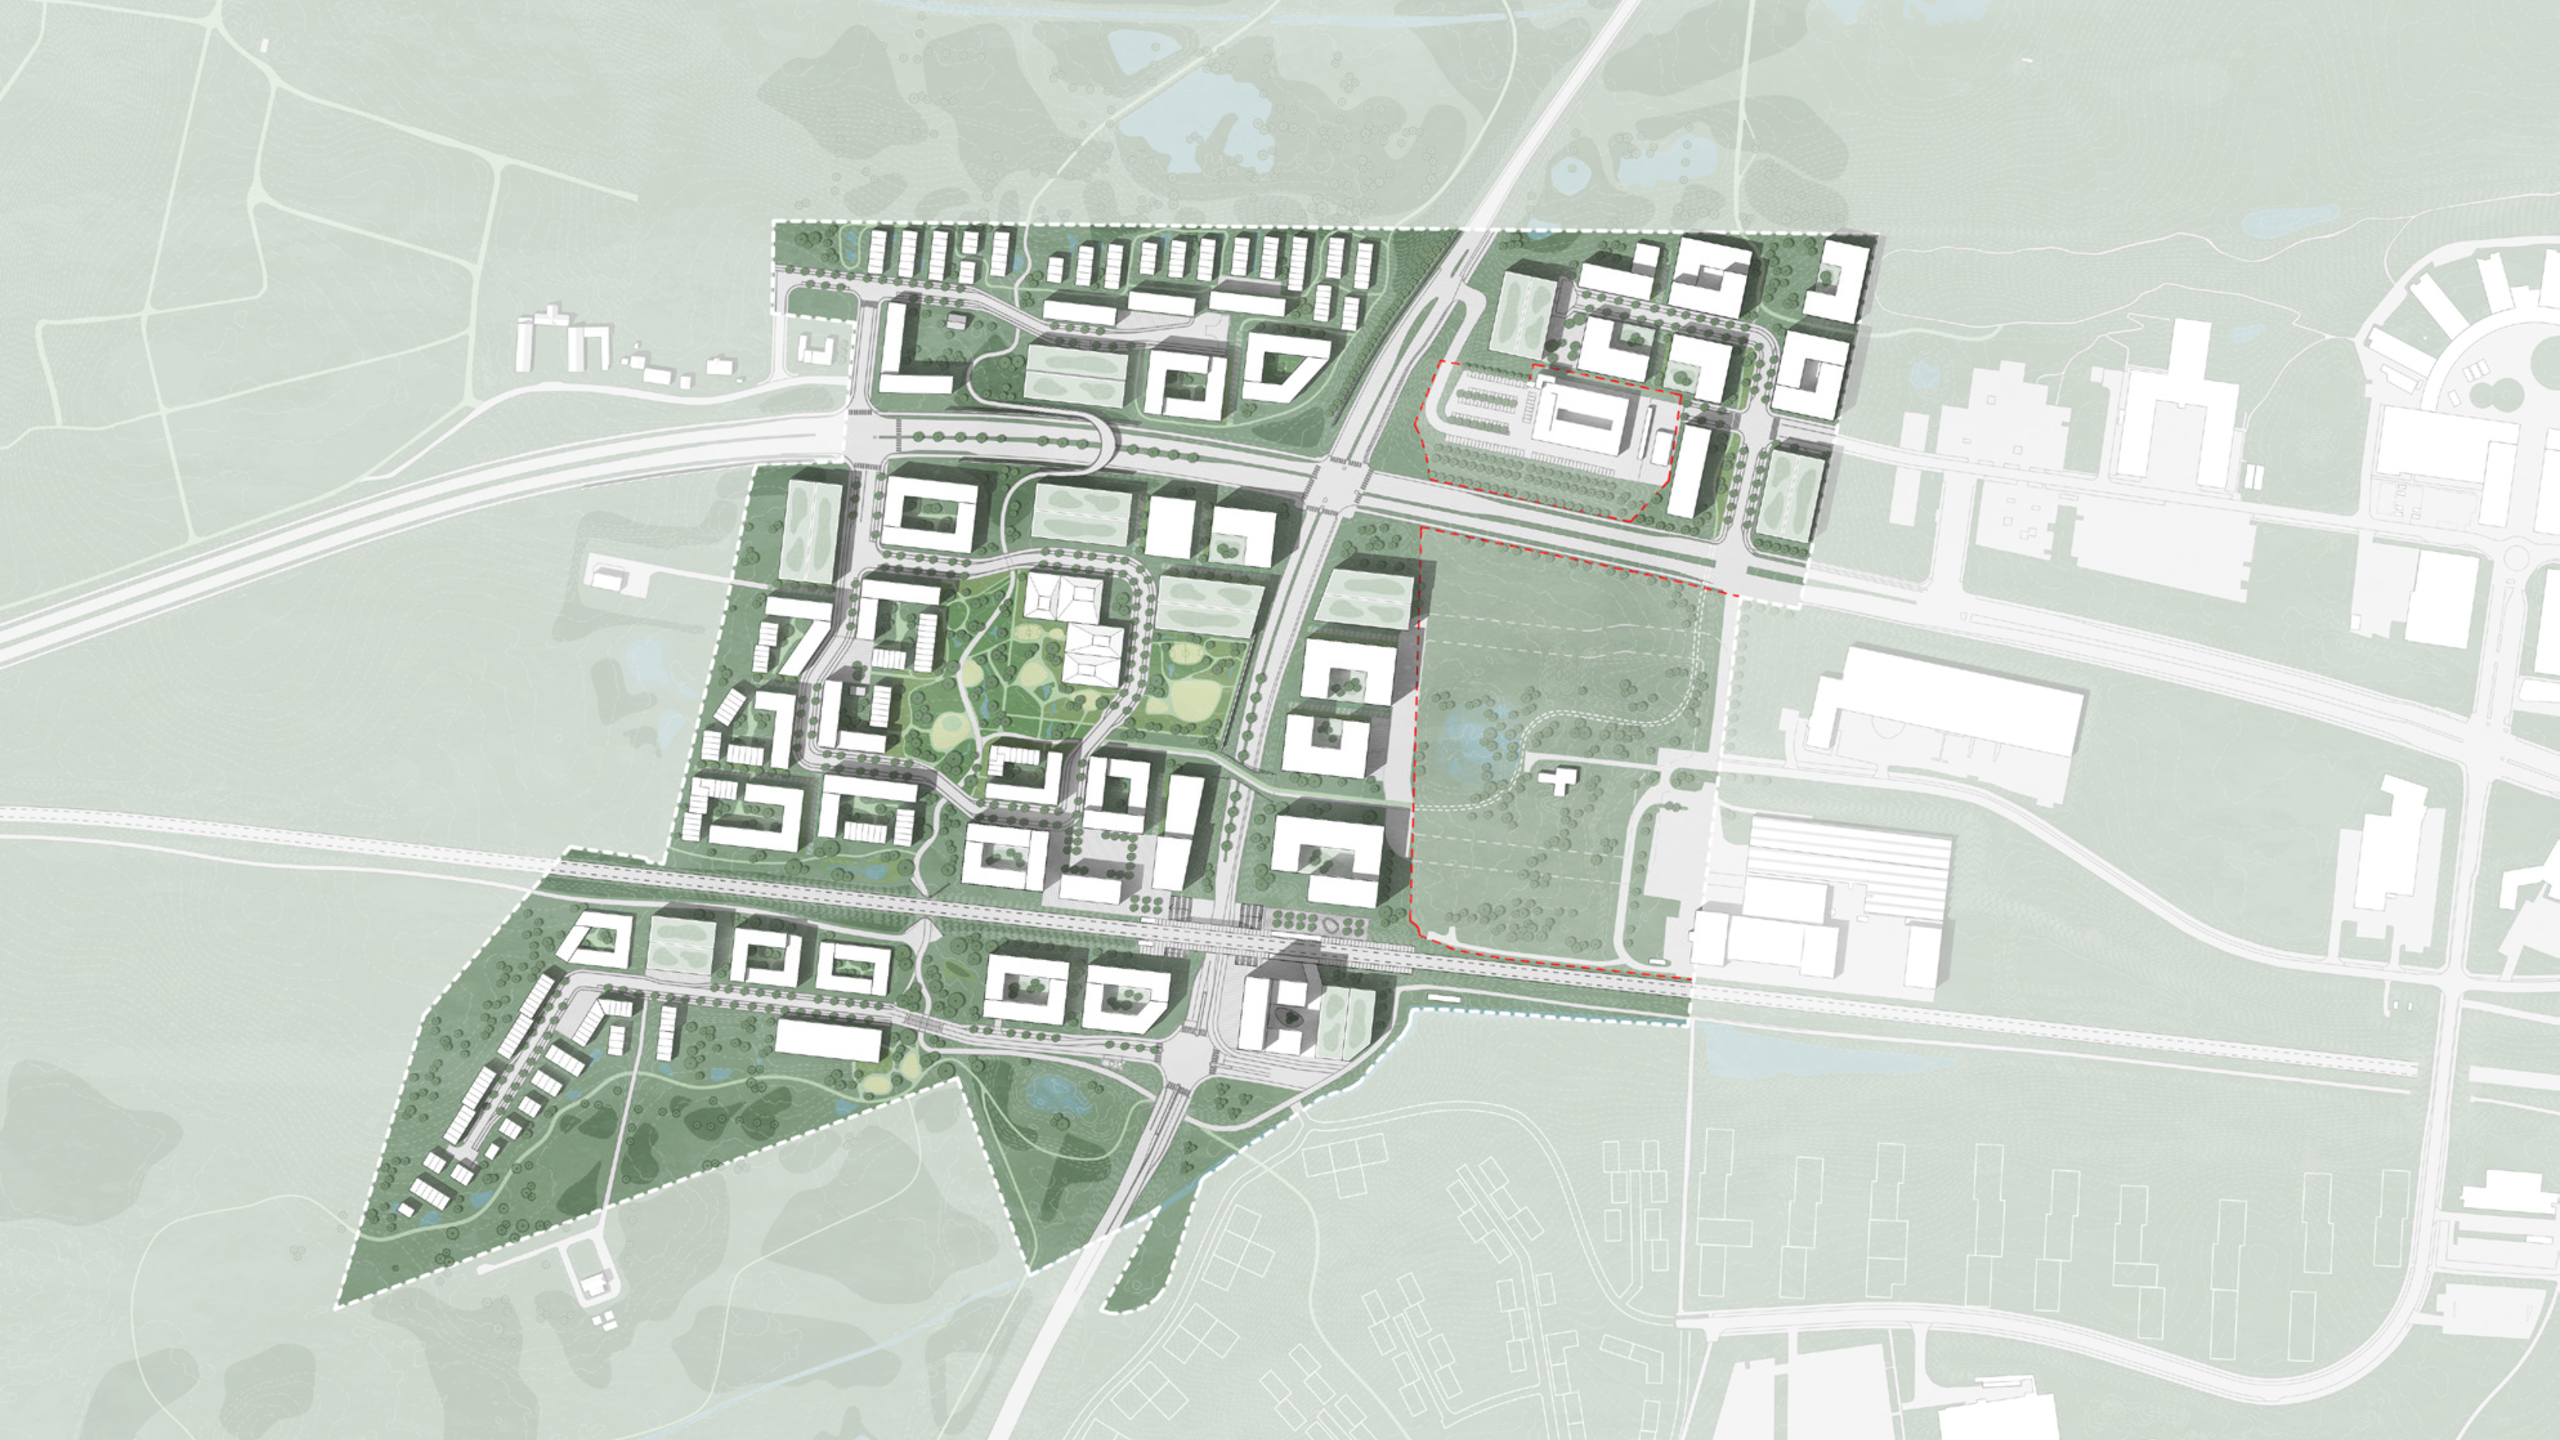 Helhedsplanen for Kildedal By visualiserer en sammenhængende grøn bydel, hvor der bygges tæt i centrum i det stationsnære område, og hvor bebyggelsen nedtrappes i periferien for at skabe et naturligt møde mellem natur og by. 
Illustration: Helhedsplan for Kildedal By